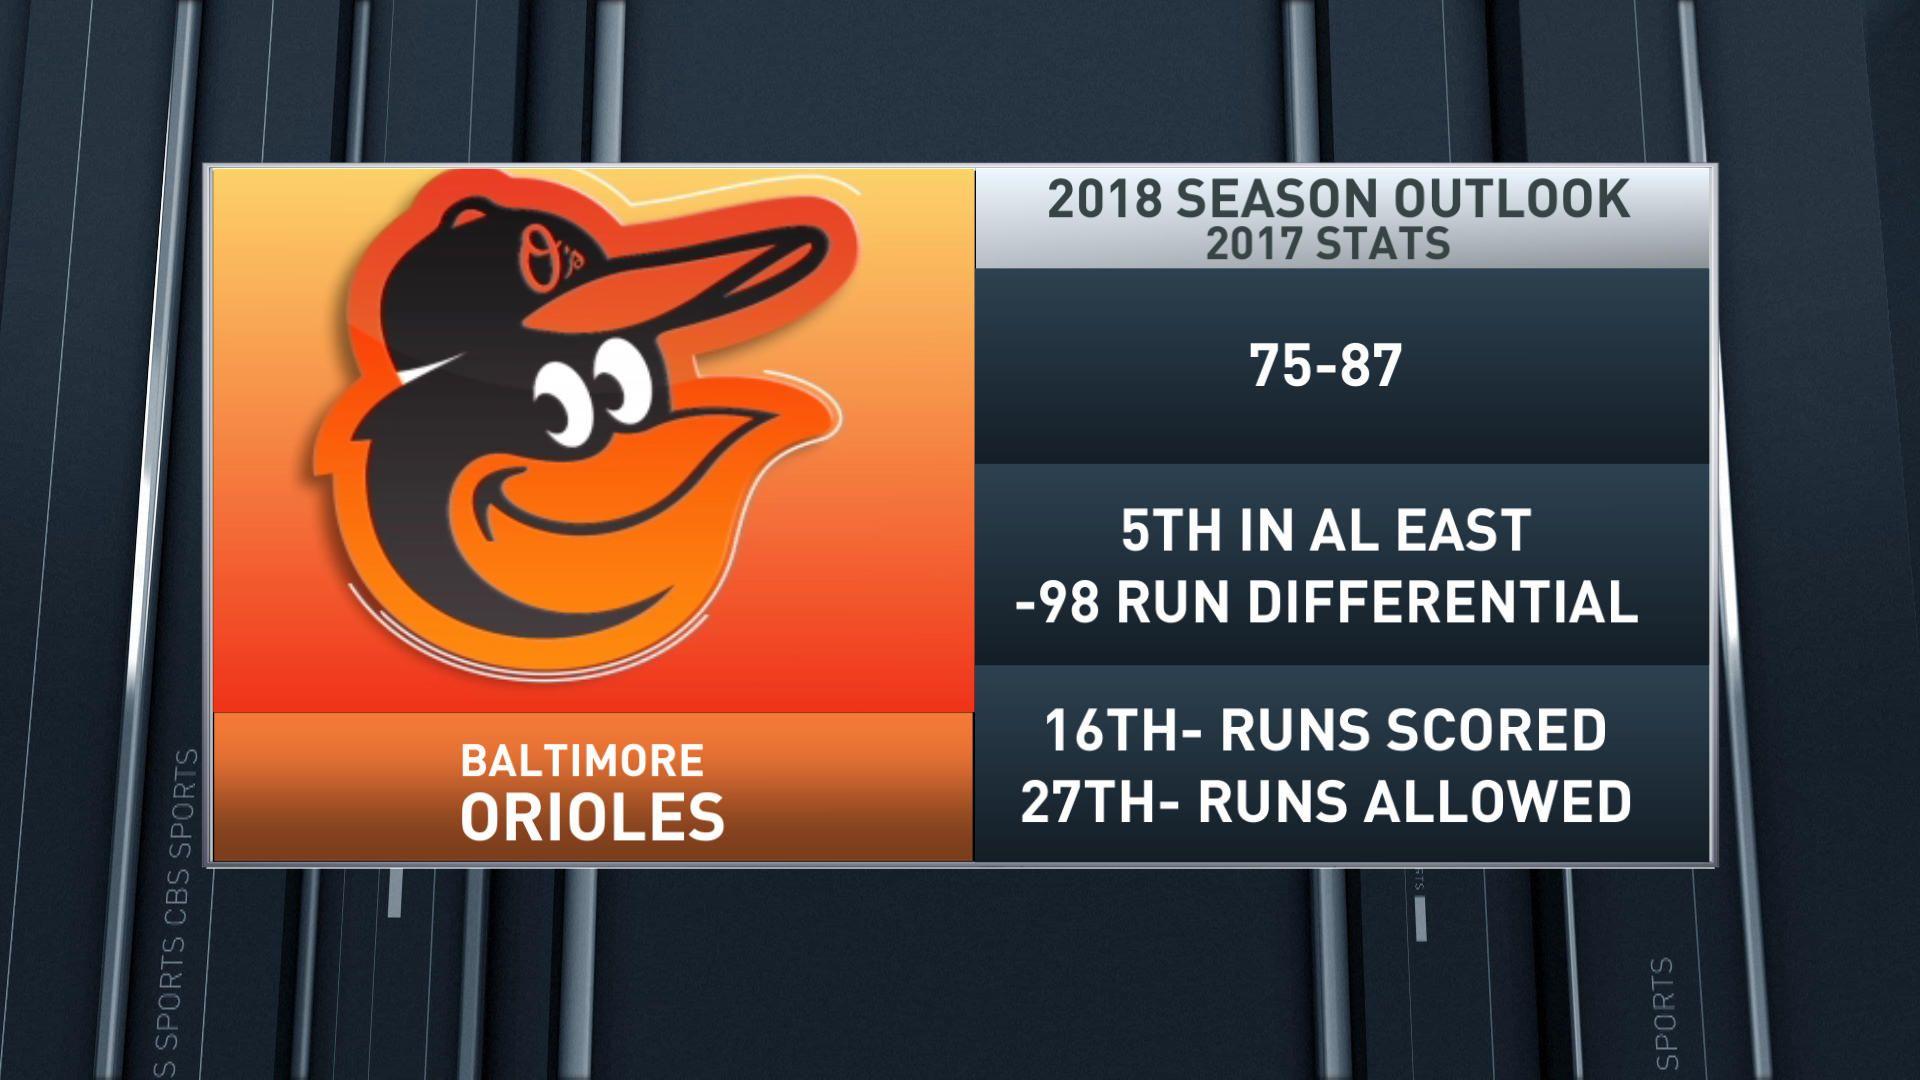 Fantasy Baseball Today: 2018 Baltimore Orioles Outlook